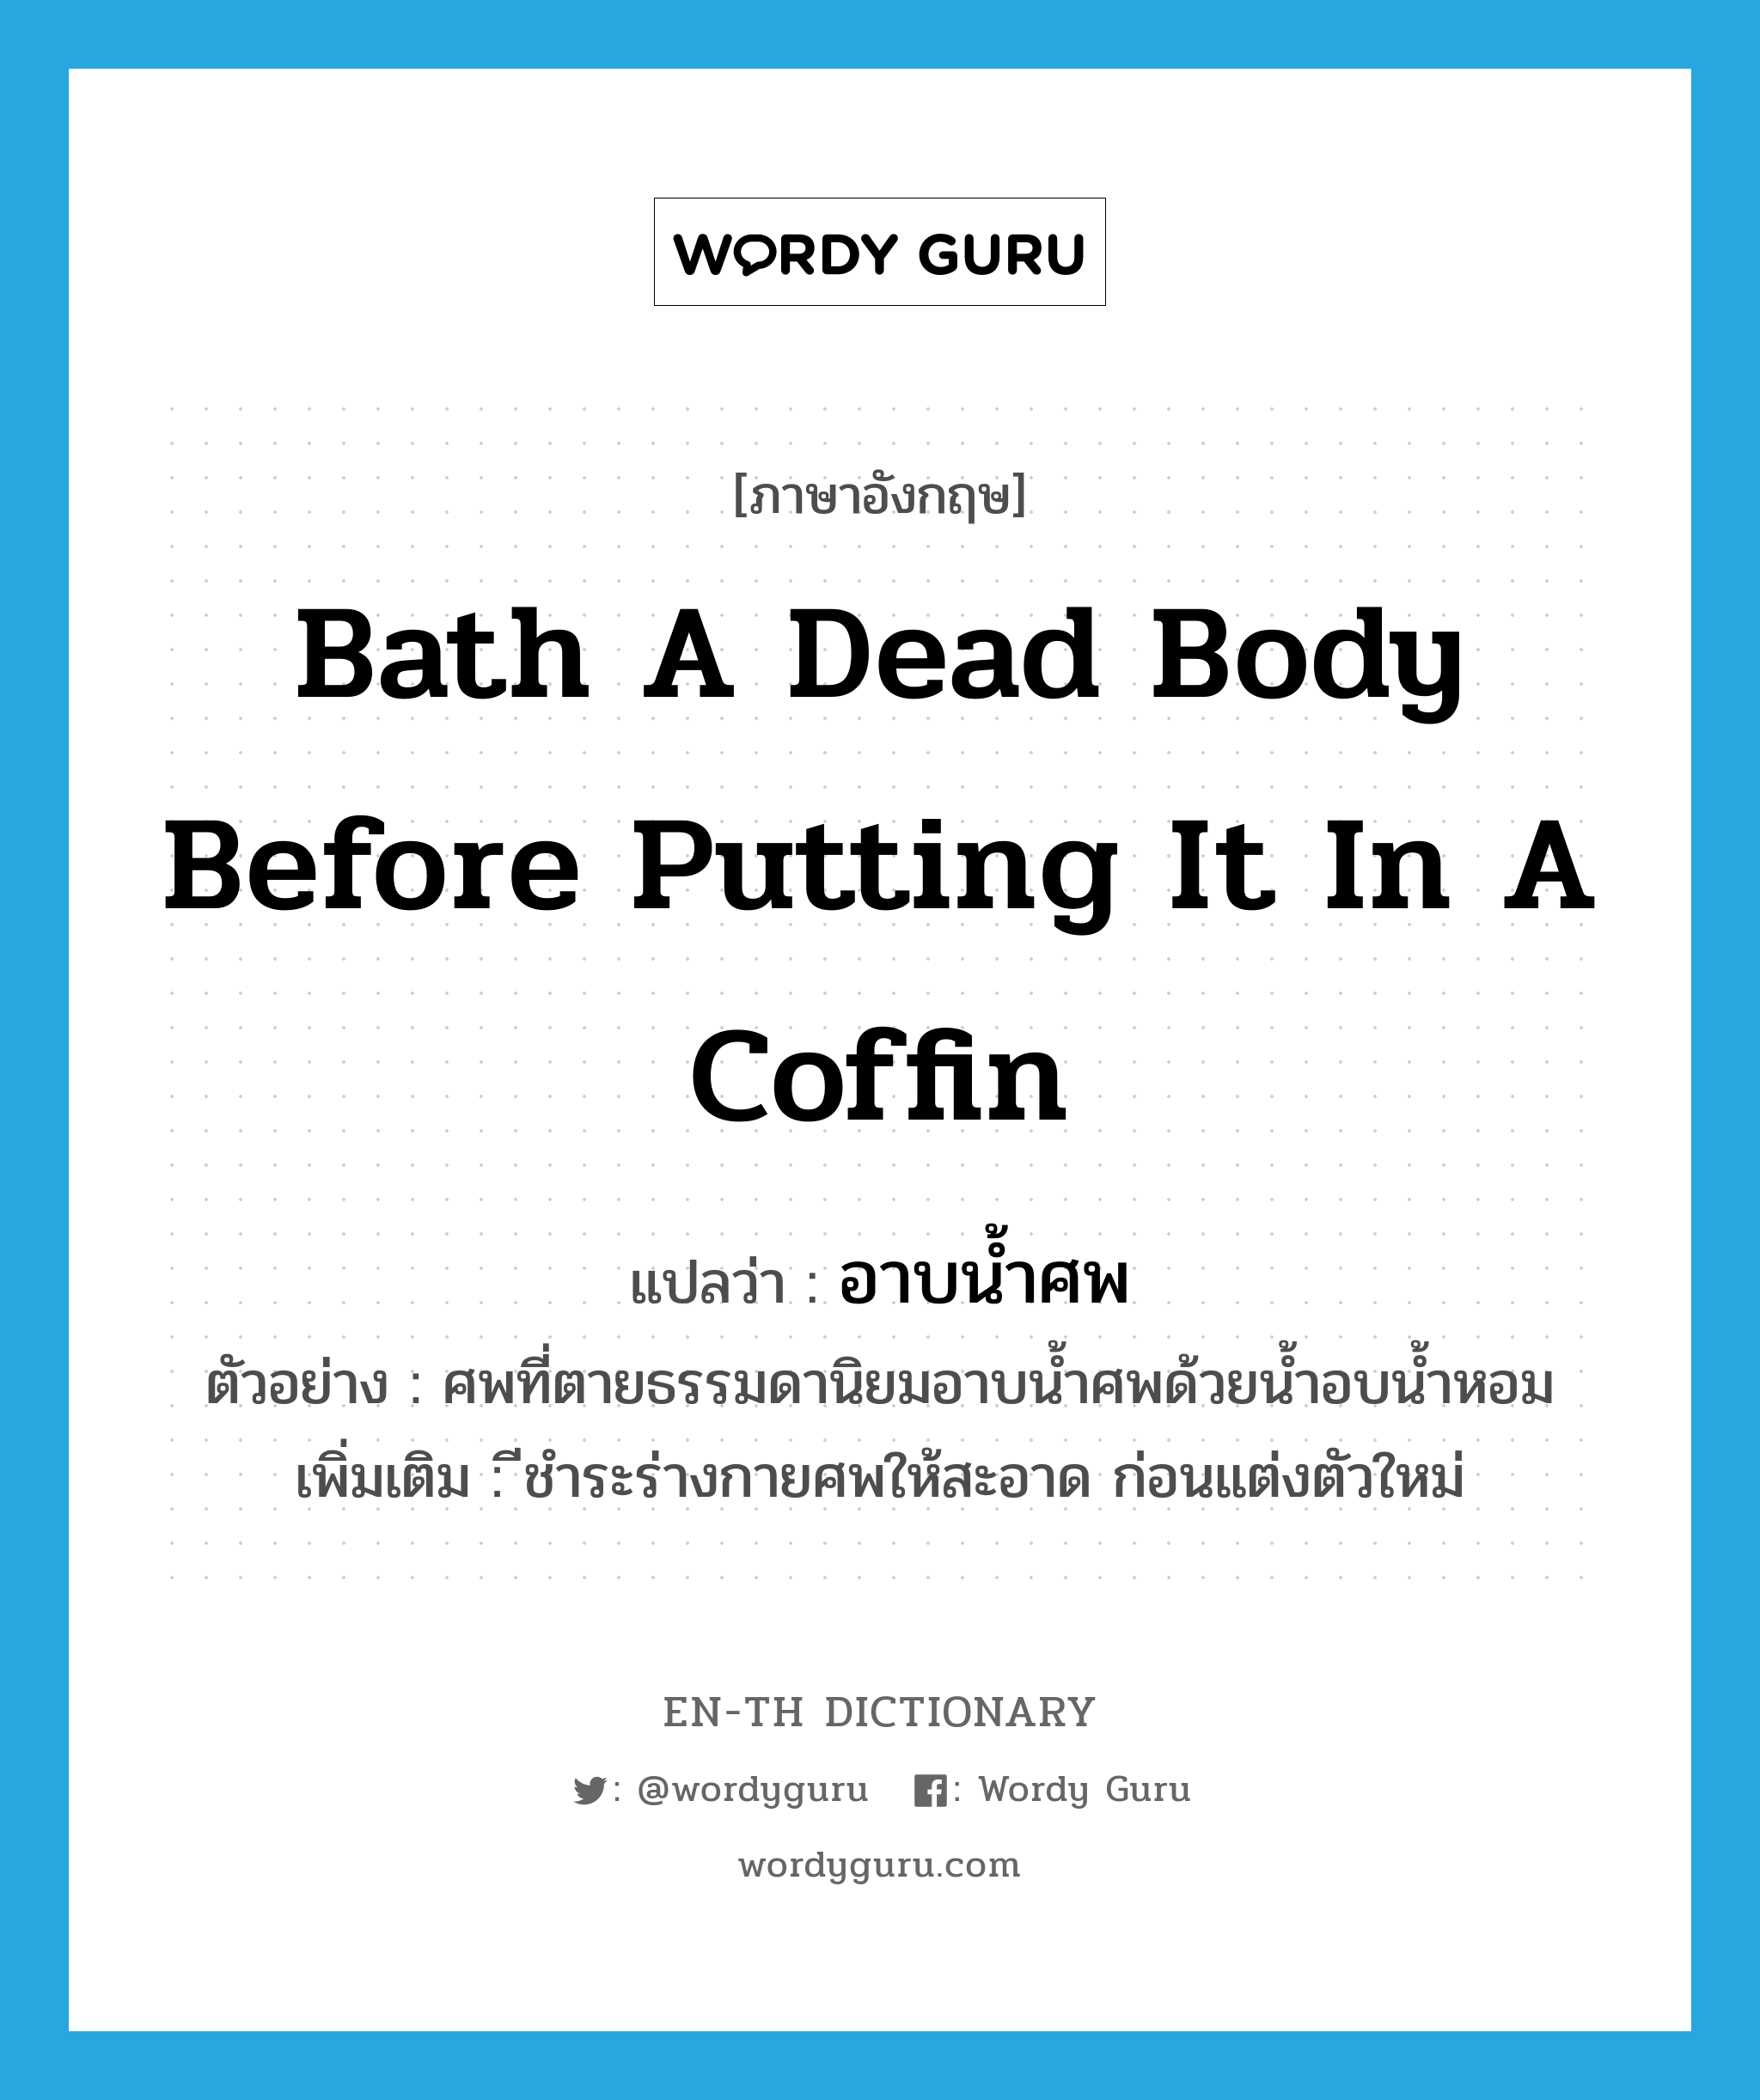 อาบน้ำศพ ภาษาอังกฤษ?, คำศัพท์ภาษาอังกฤษ อาบน้ำศพ แปลว่า bath a dead body before putting it in a coffin ประเภท V ตัวอย่าง ศพที่ตายธรรมดานิยมอาบน้ำศพด้วยน้ำอบน้ำหอม เพิ่มเติม ีชำระร่างกายศพให้สะอาด ก่อนแต่งตัวใหม่ หมวด V